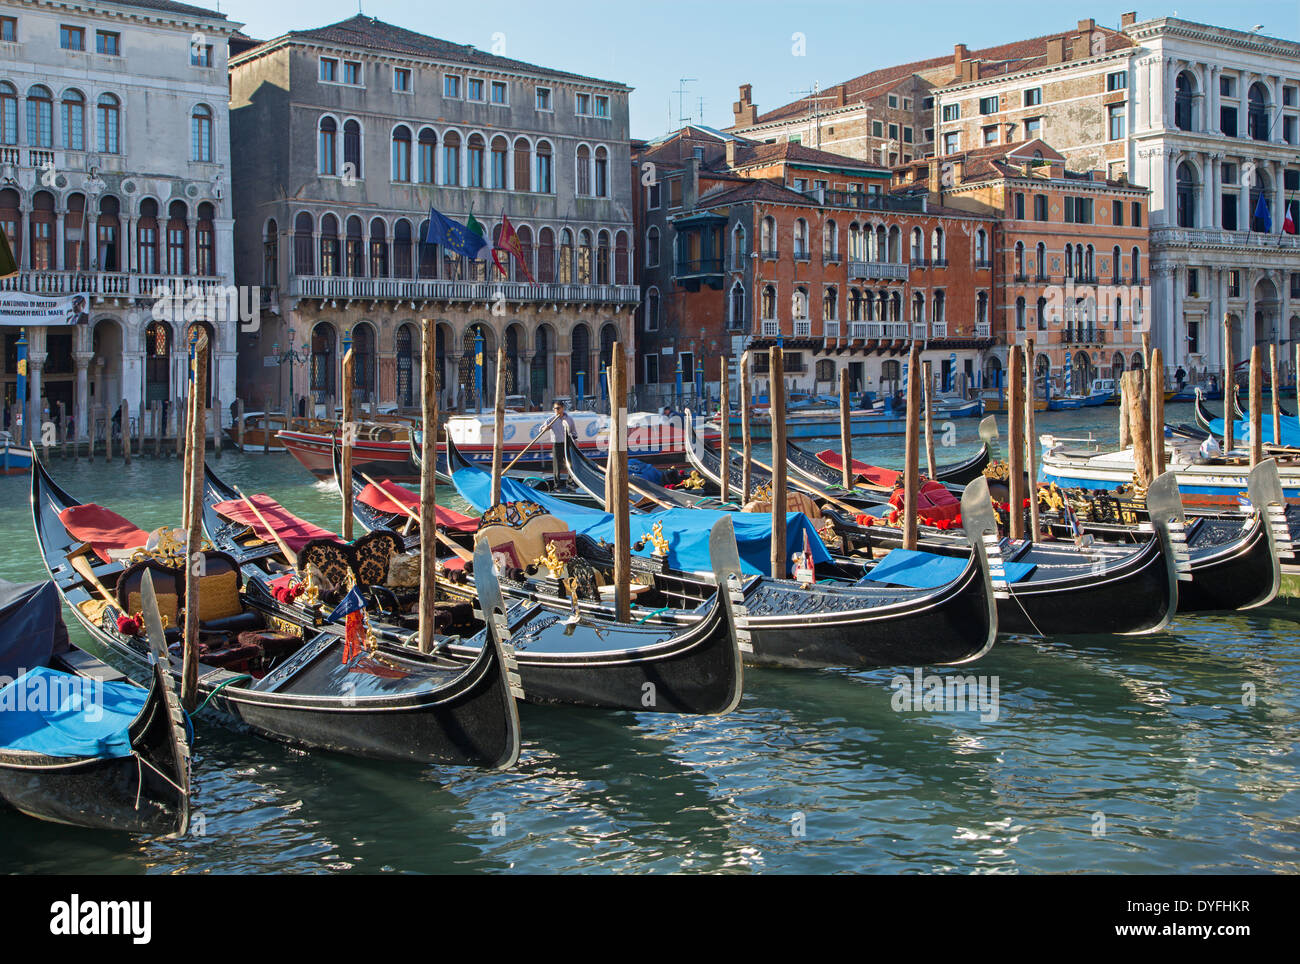 Venecia, Italia - Marzo 12, 2014: el Canal Grande y el muelle de góndolas. Foto de stock